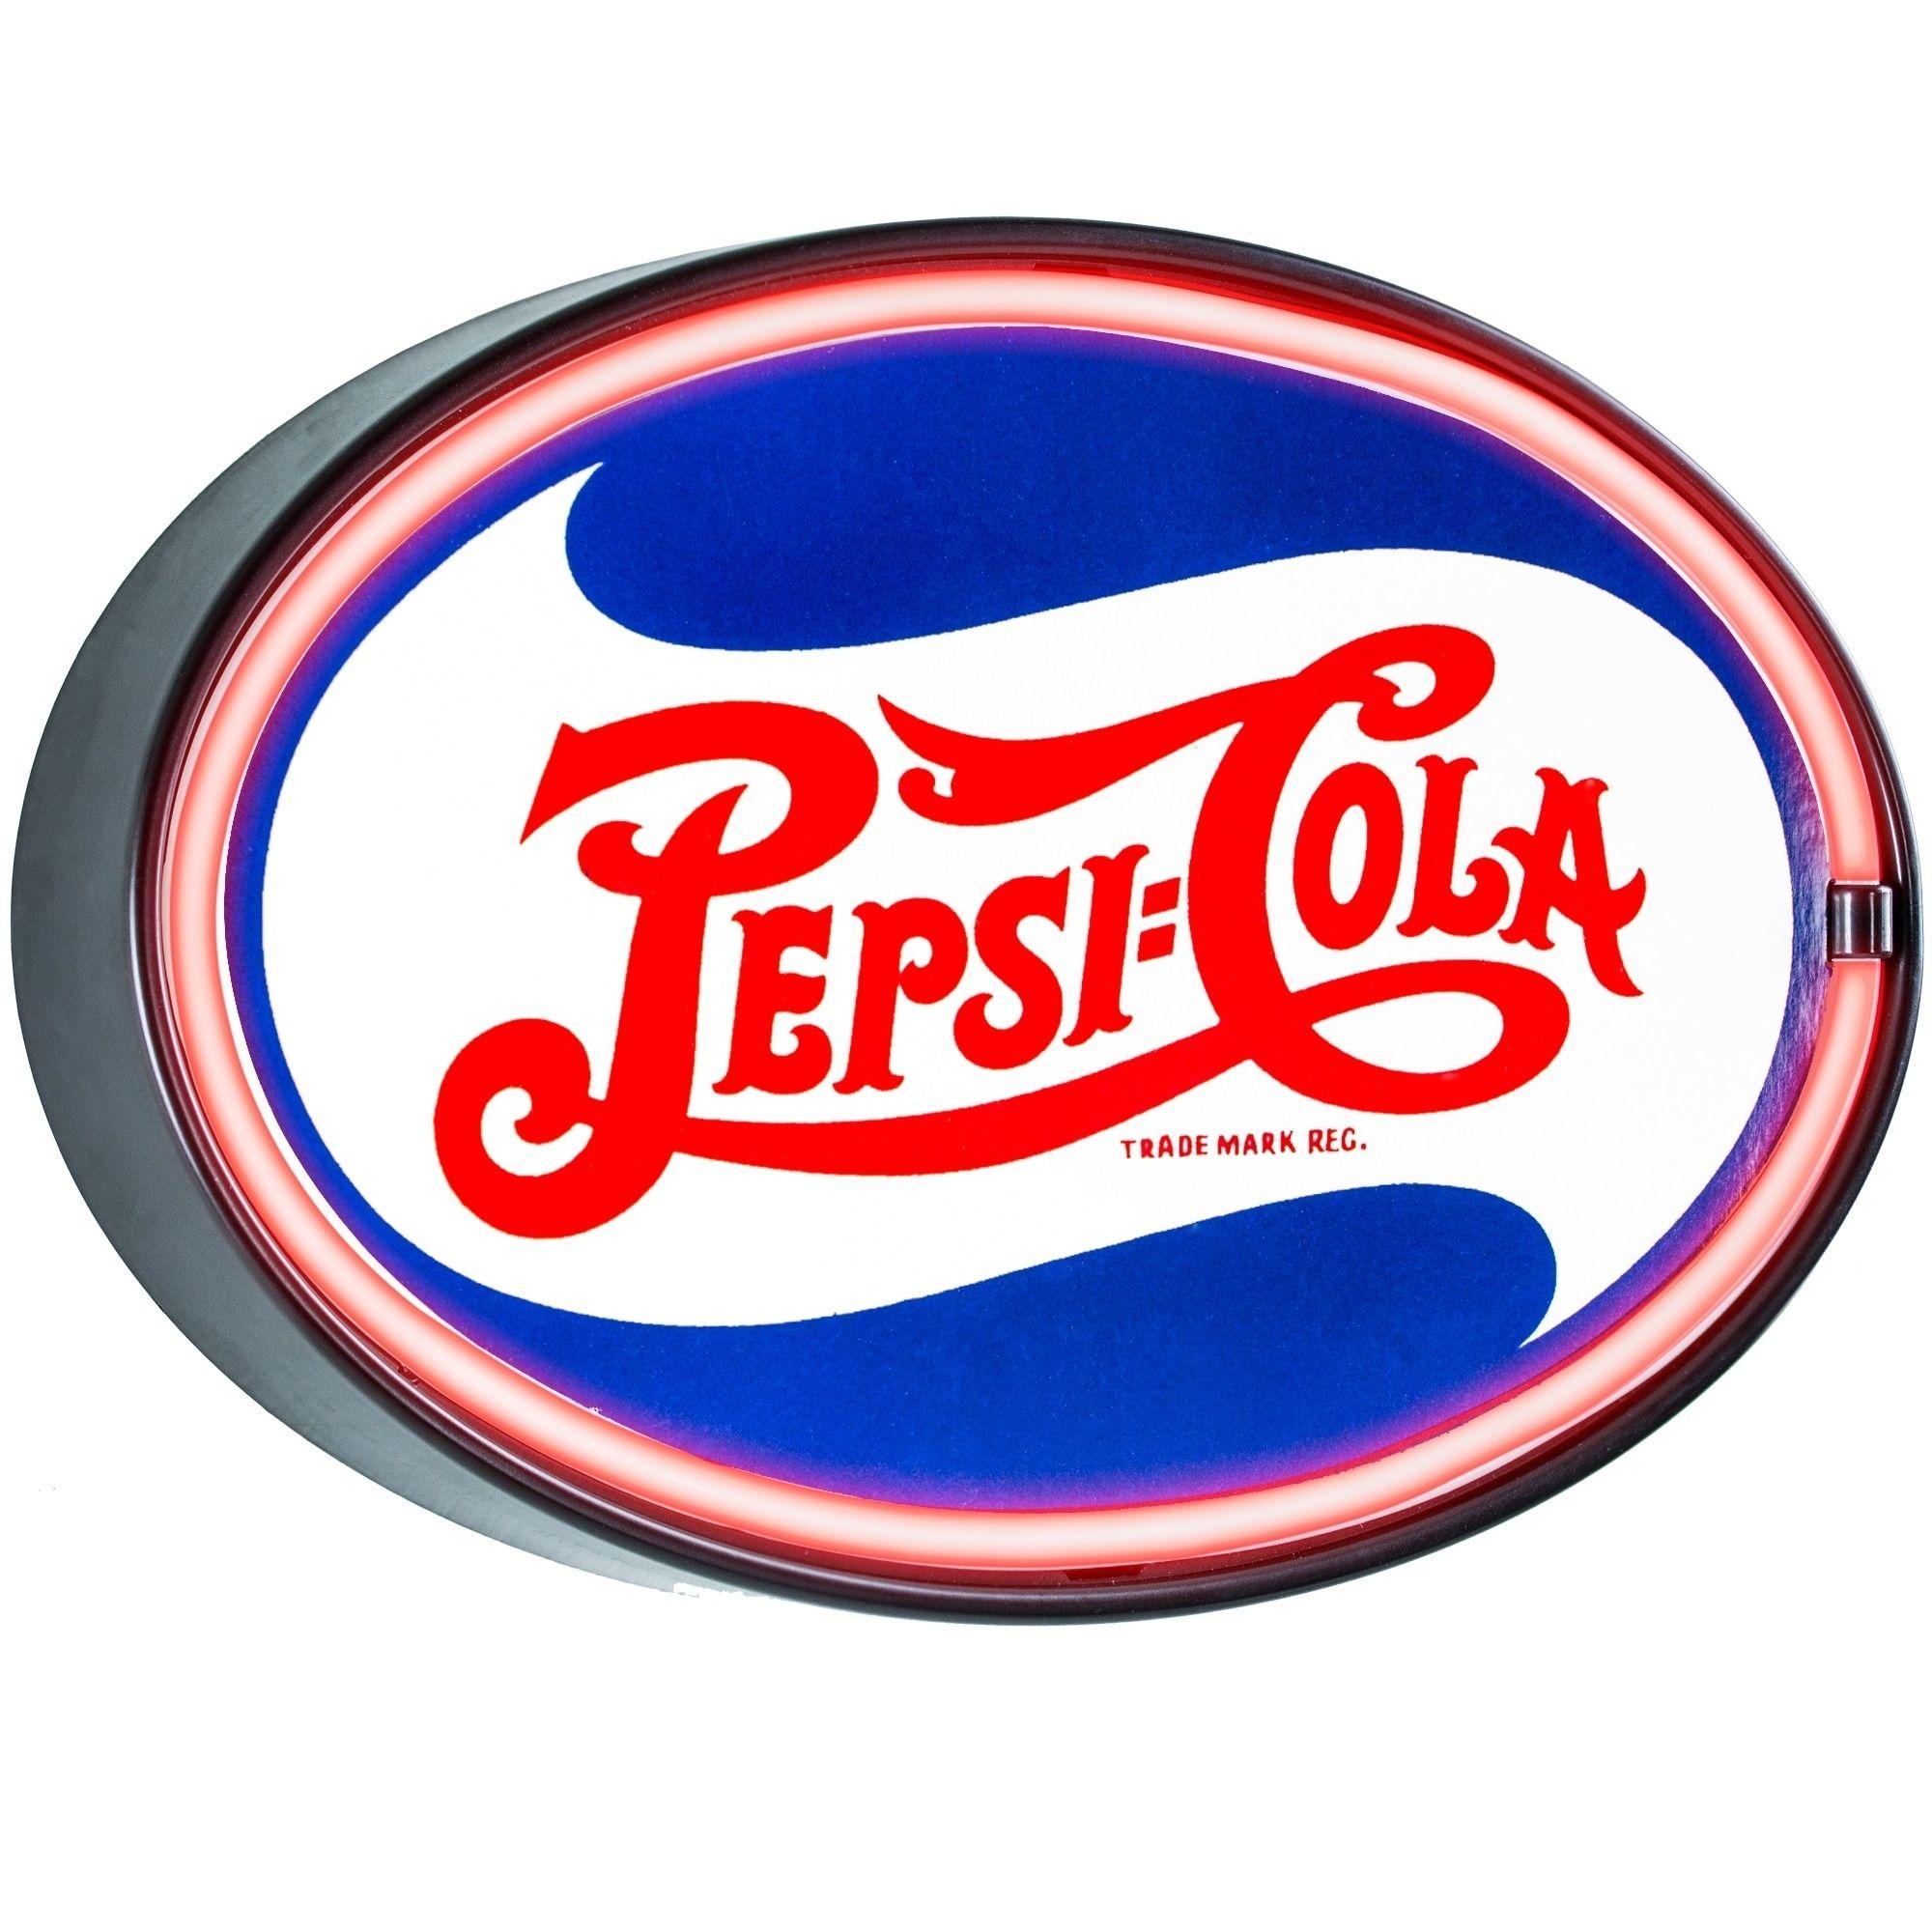 Vintage Pepsi Cola Logo - Shop Millennium Art Vintage Pepsi Cola Oval Shaped LED Light Up Sign